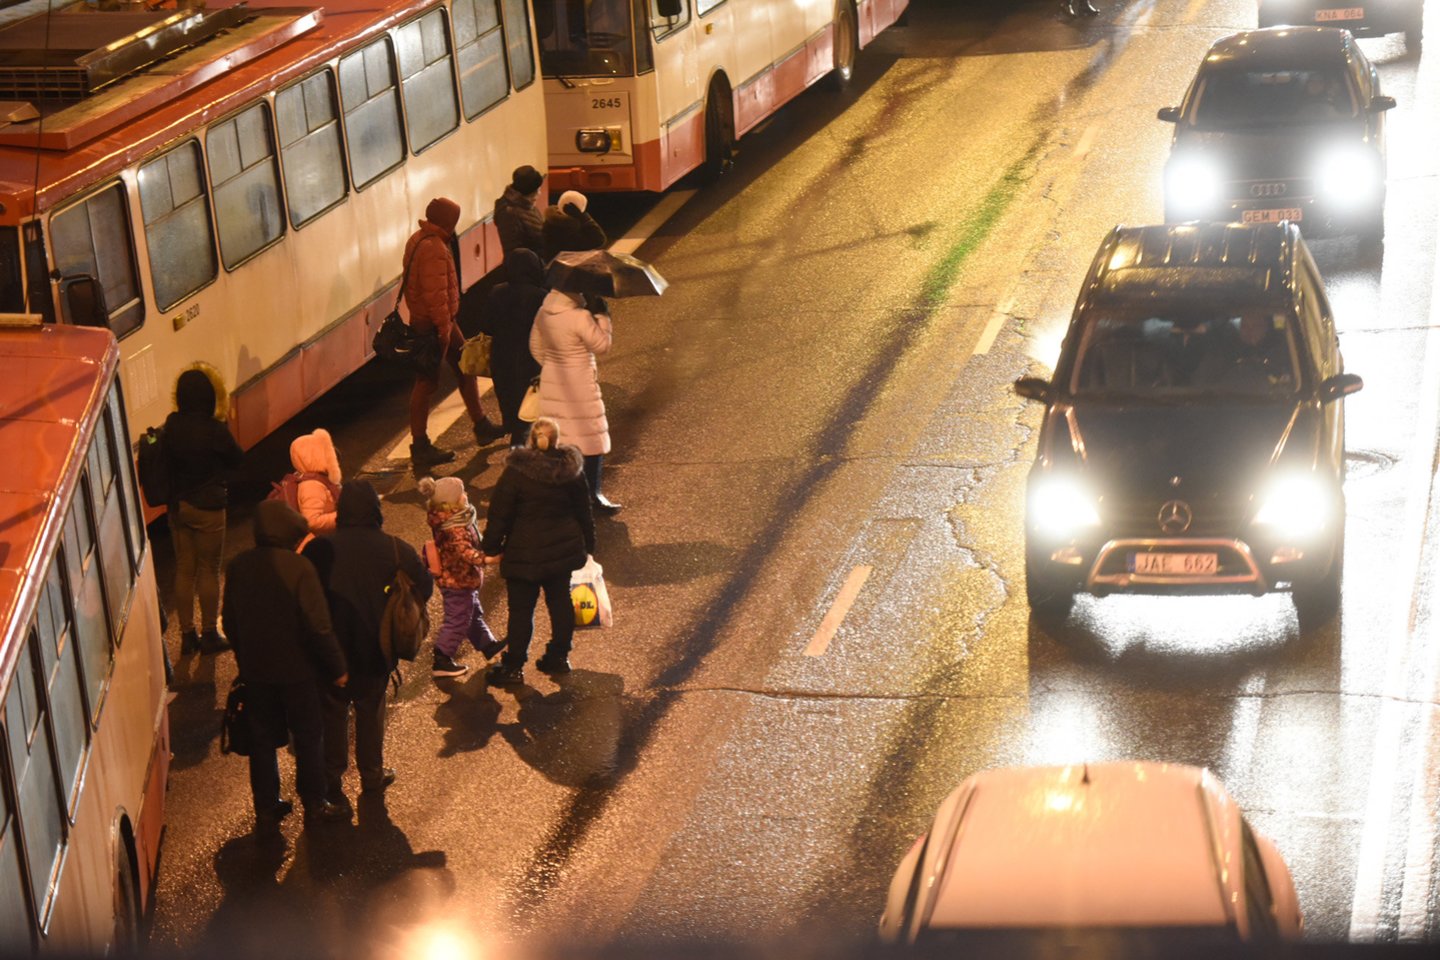 Dėl likviduojamos avarijos darbų Žemaitės gatve leidžiamas tik viešojo transporto eismas.<br>D.Umbraso nuotr.